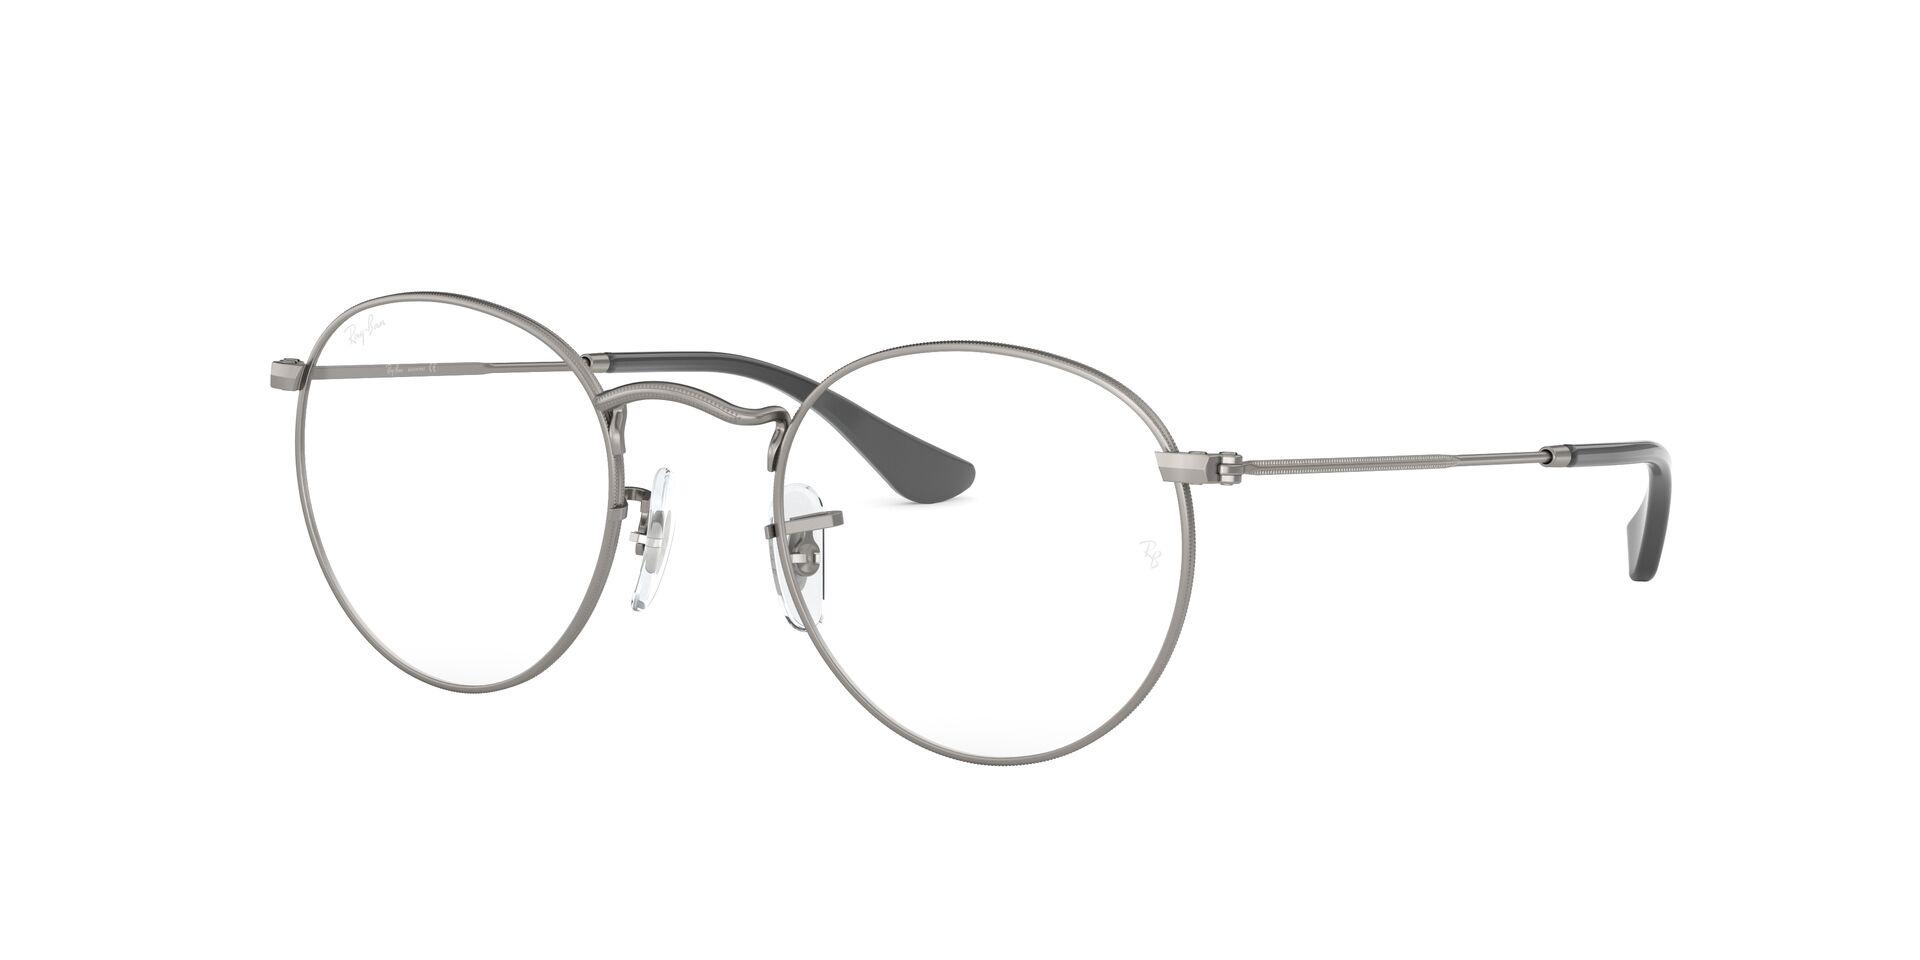 Mắt Kính Ray-Ban Round Metal - RX3447V 2620 -Eyeglasses